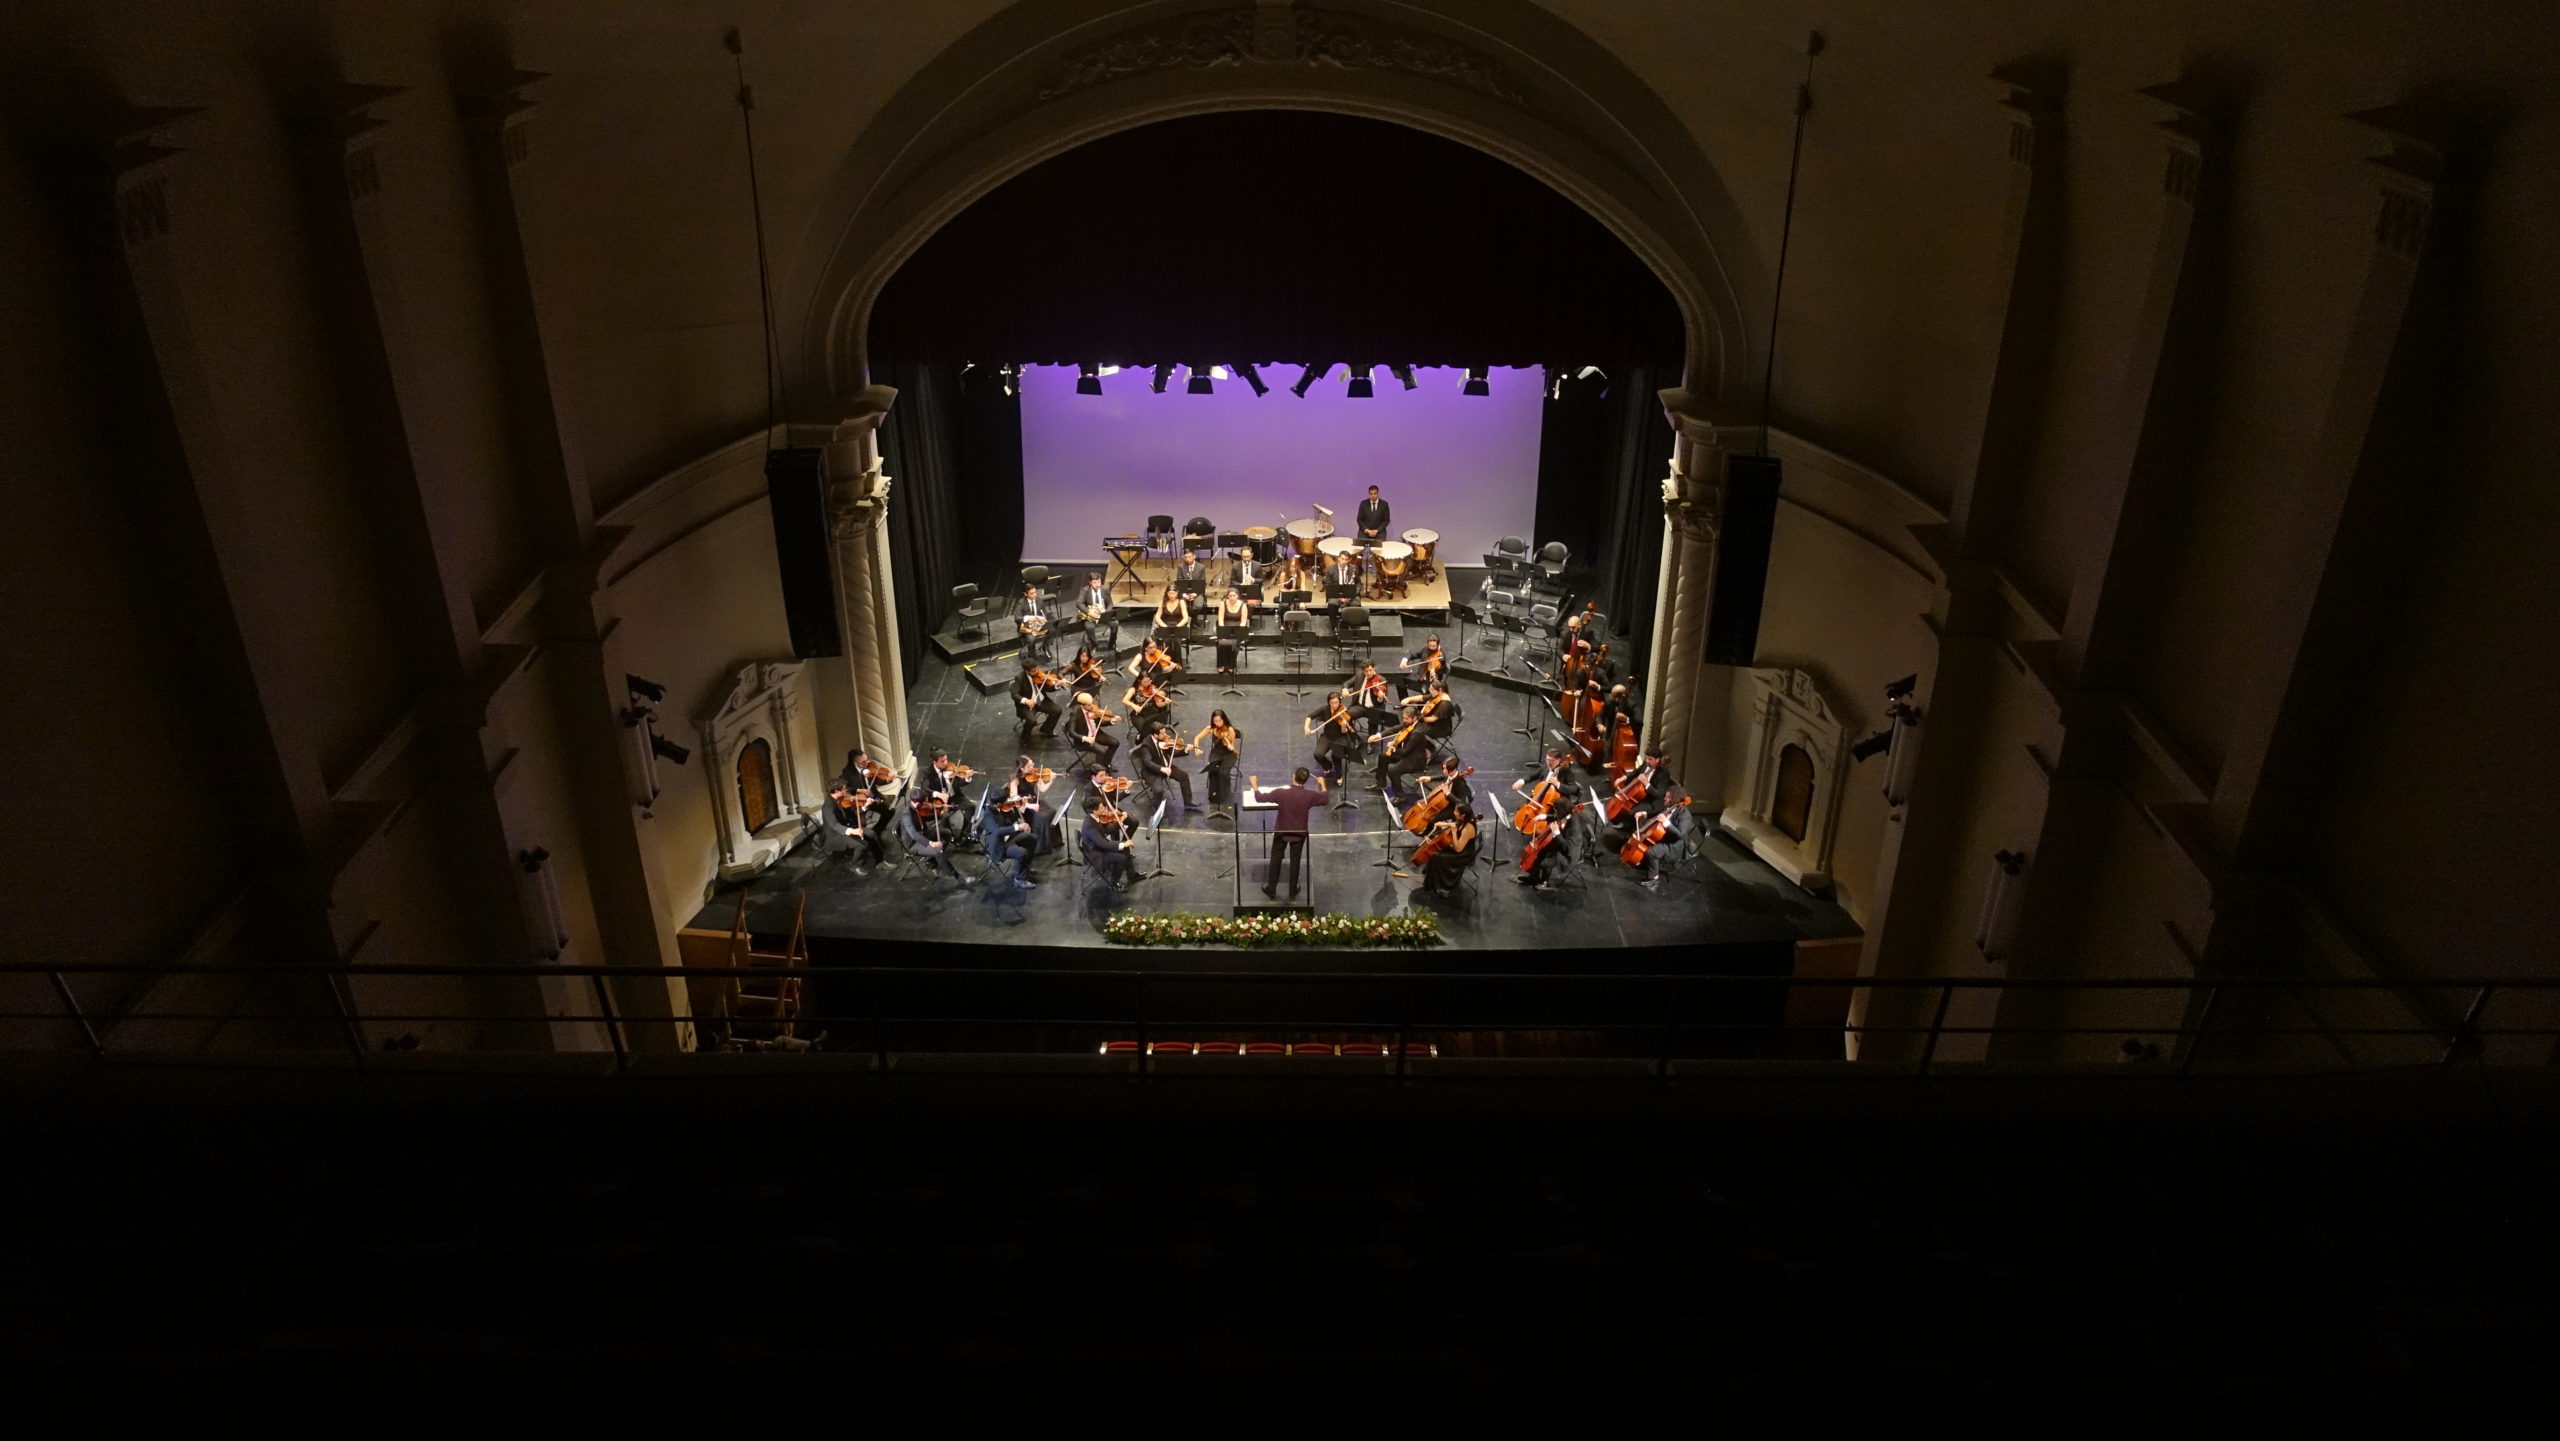 La Orquesta Filarmónica de Los Ríos maravilló a la audiencia en el Teatro Regional Cervantes